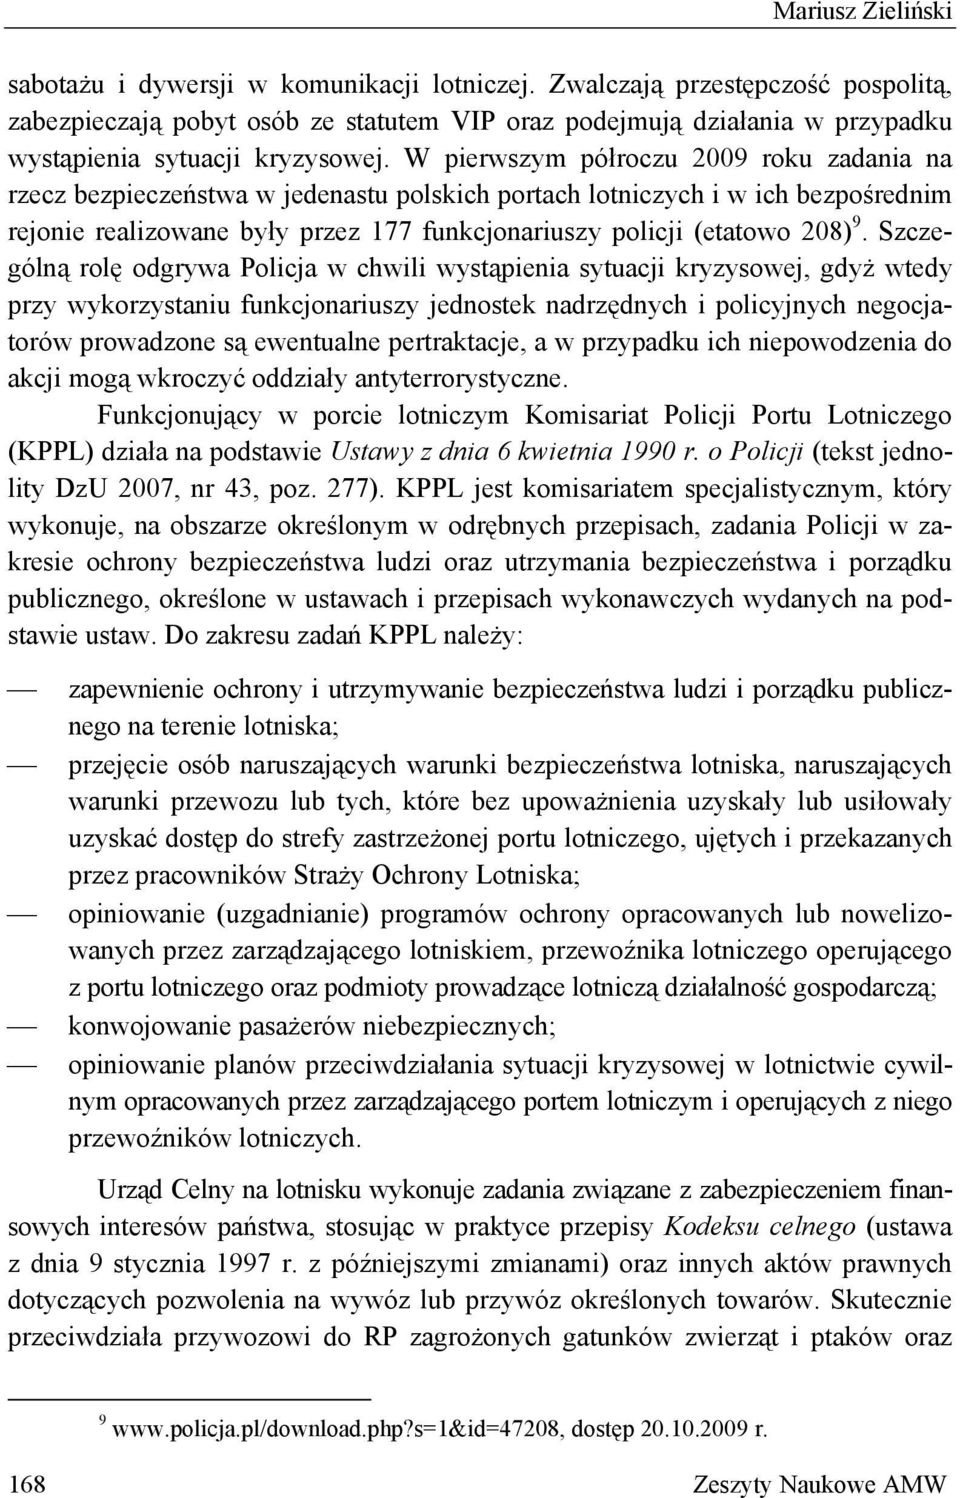 W pierwszym półroczu 2009 roku zadania na rzecz bezpieczeństwa w jedenastu polskich portach lotniczych i w ich bezpośrednim rejonie realizowane były przez 177 funkcjonariuszy policji (etatowo 208) 9.